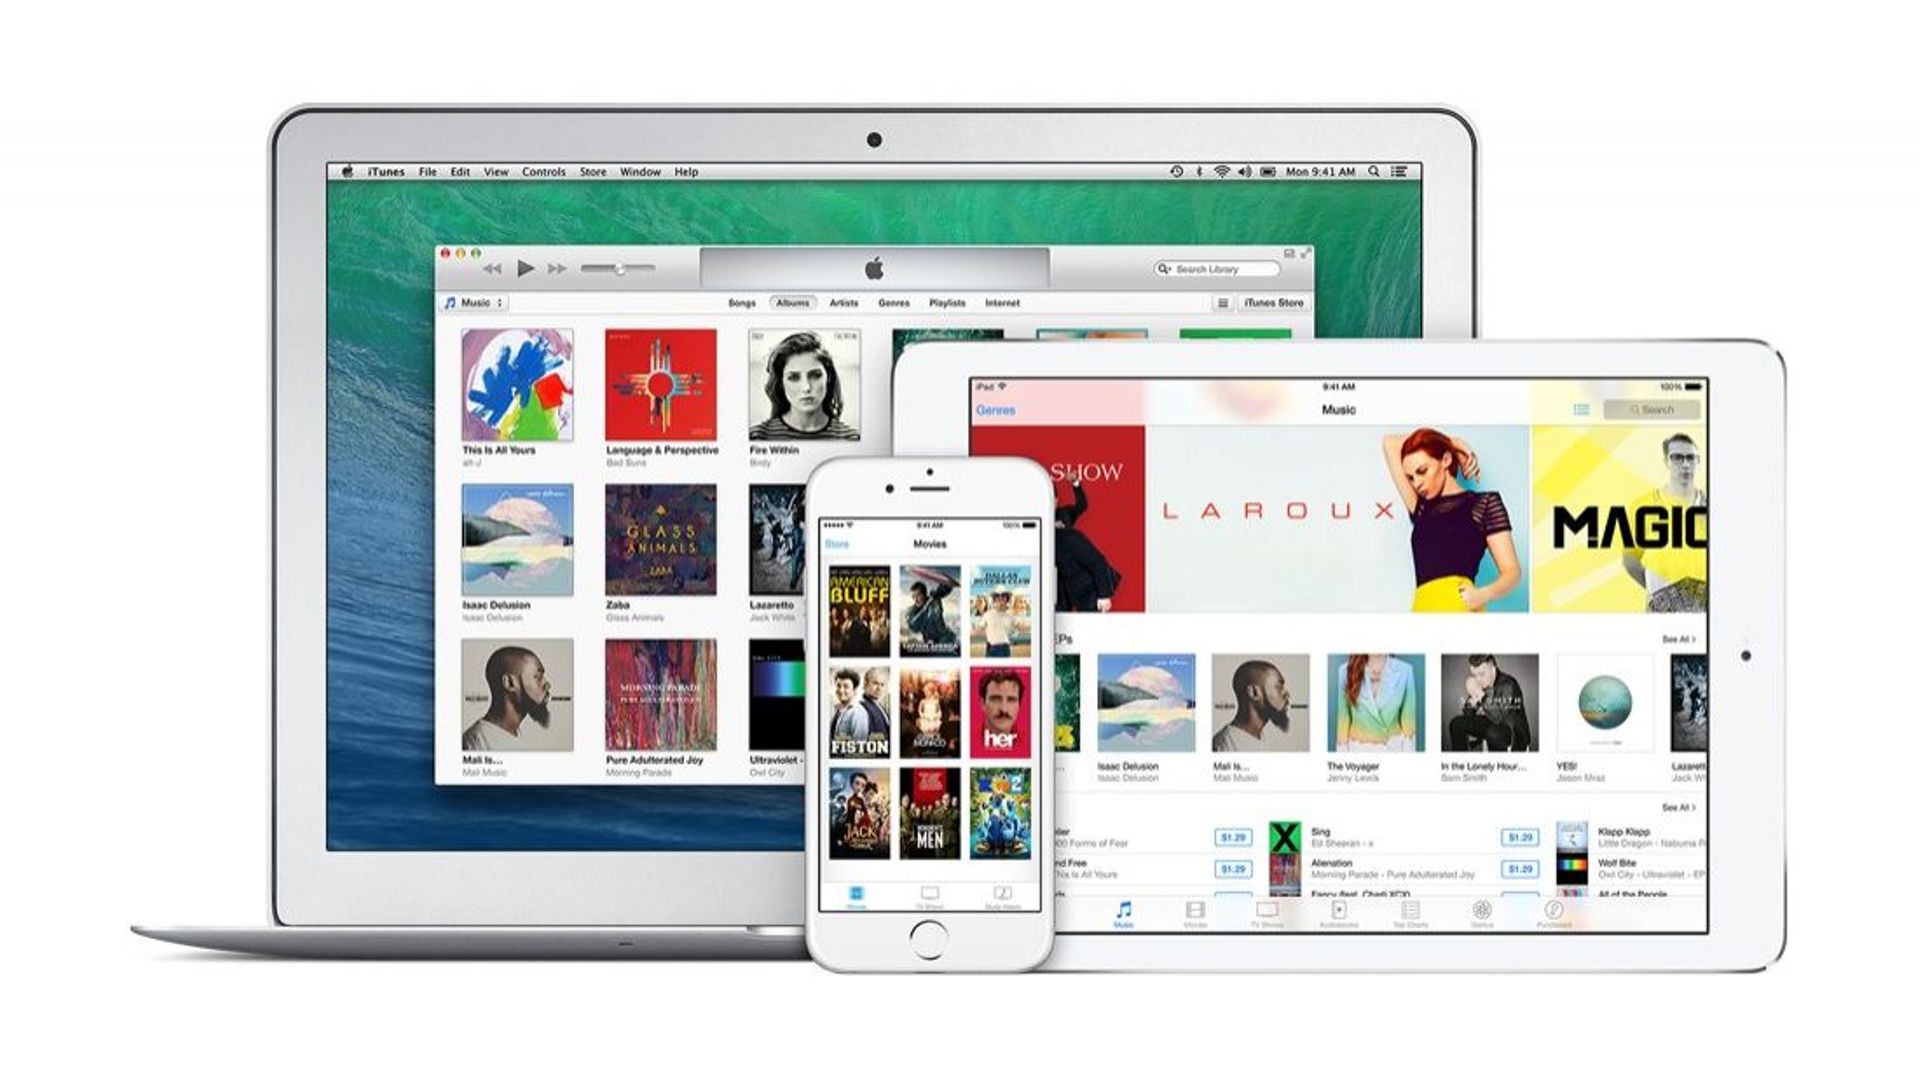 Une série de problèmes techniques a rendu difficile à l'accès au service "iTunes in the cloud" d'Apple
